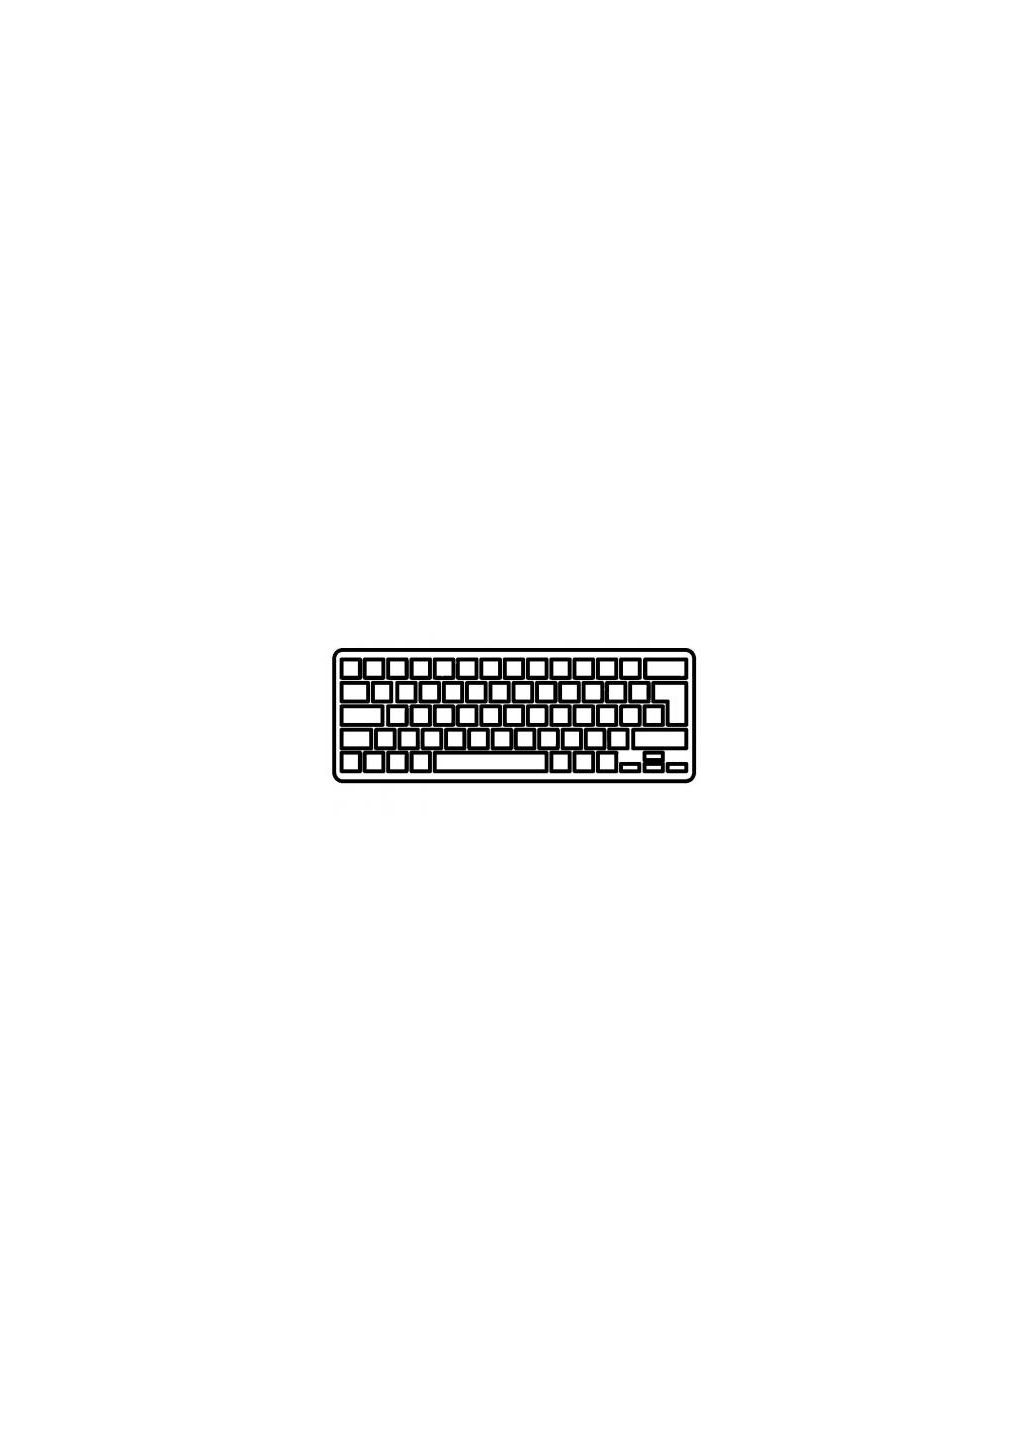 Клавиатура ноутбука Pavilion dv43000 черная UA (A43459) HP pavilion dv4-3000 черная ua (276706771)